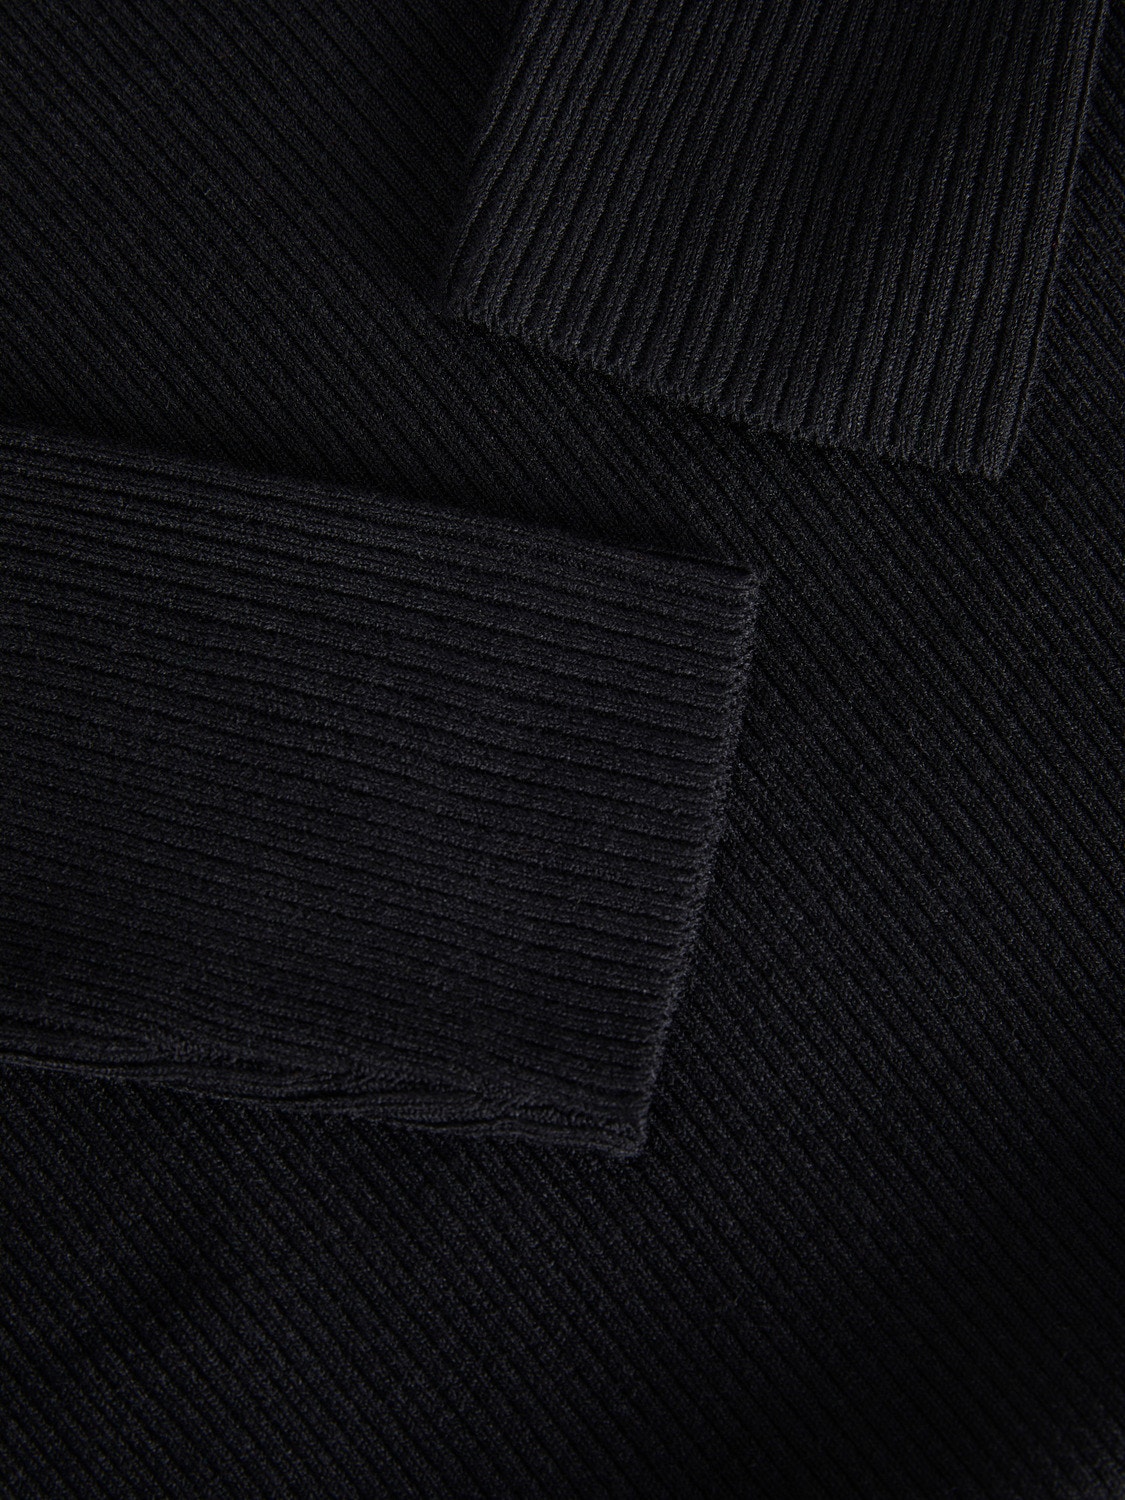 JJXX JXJUNIPER Knitted Dress -Black - 12243111